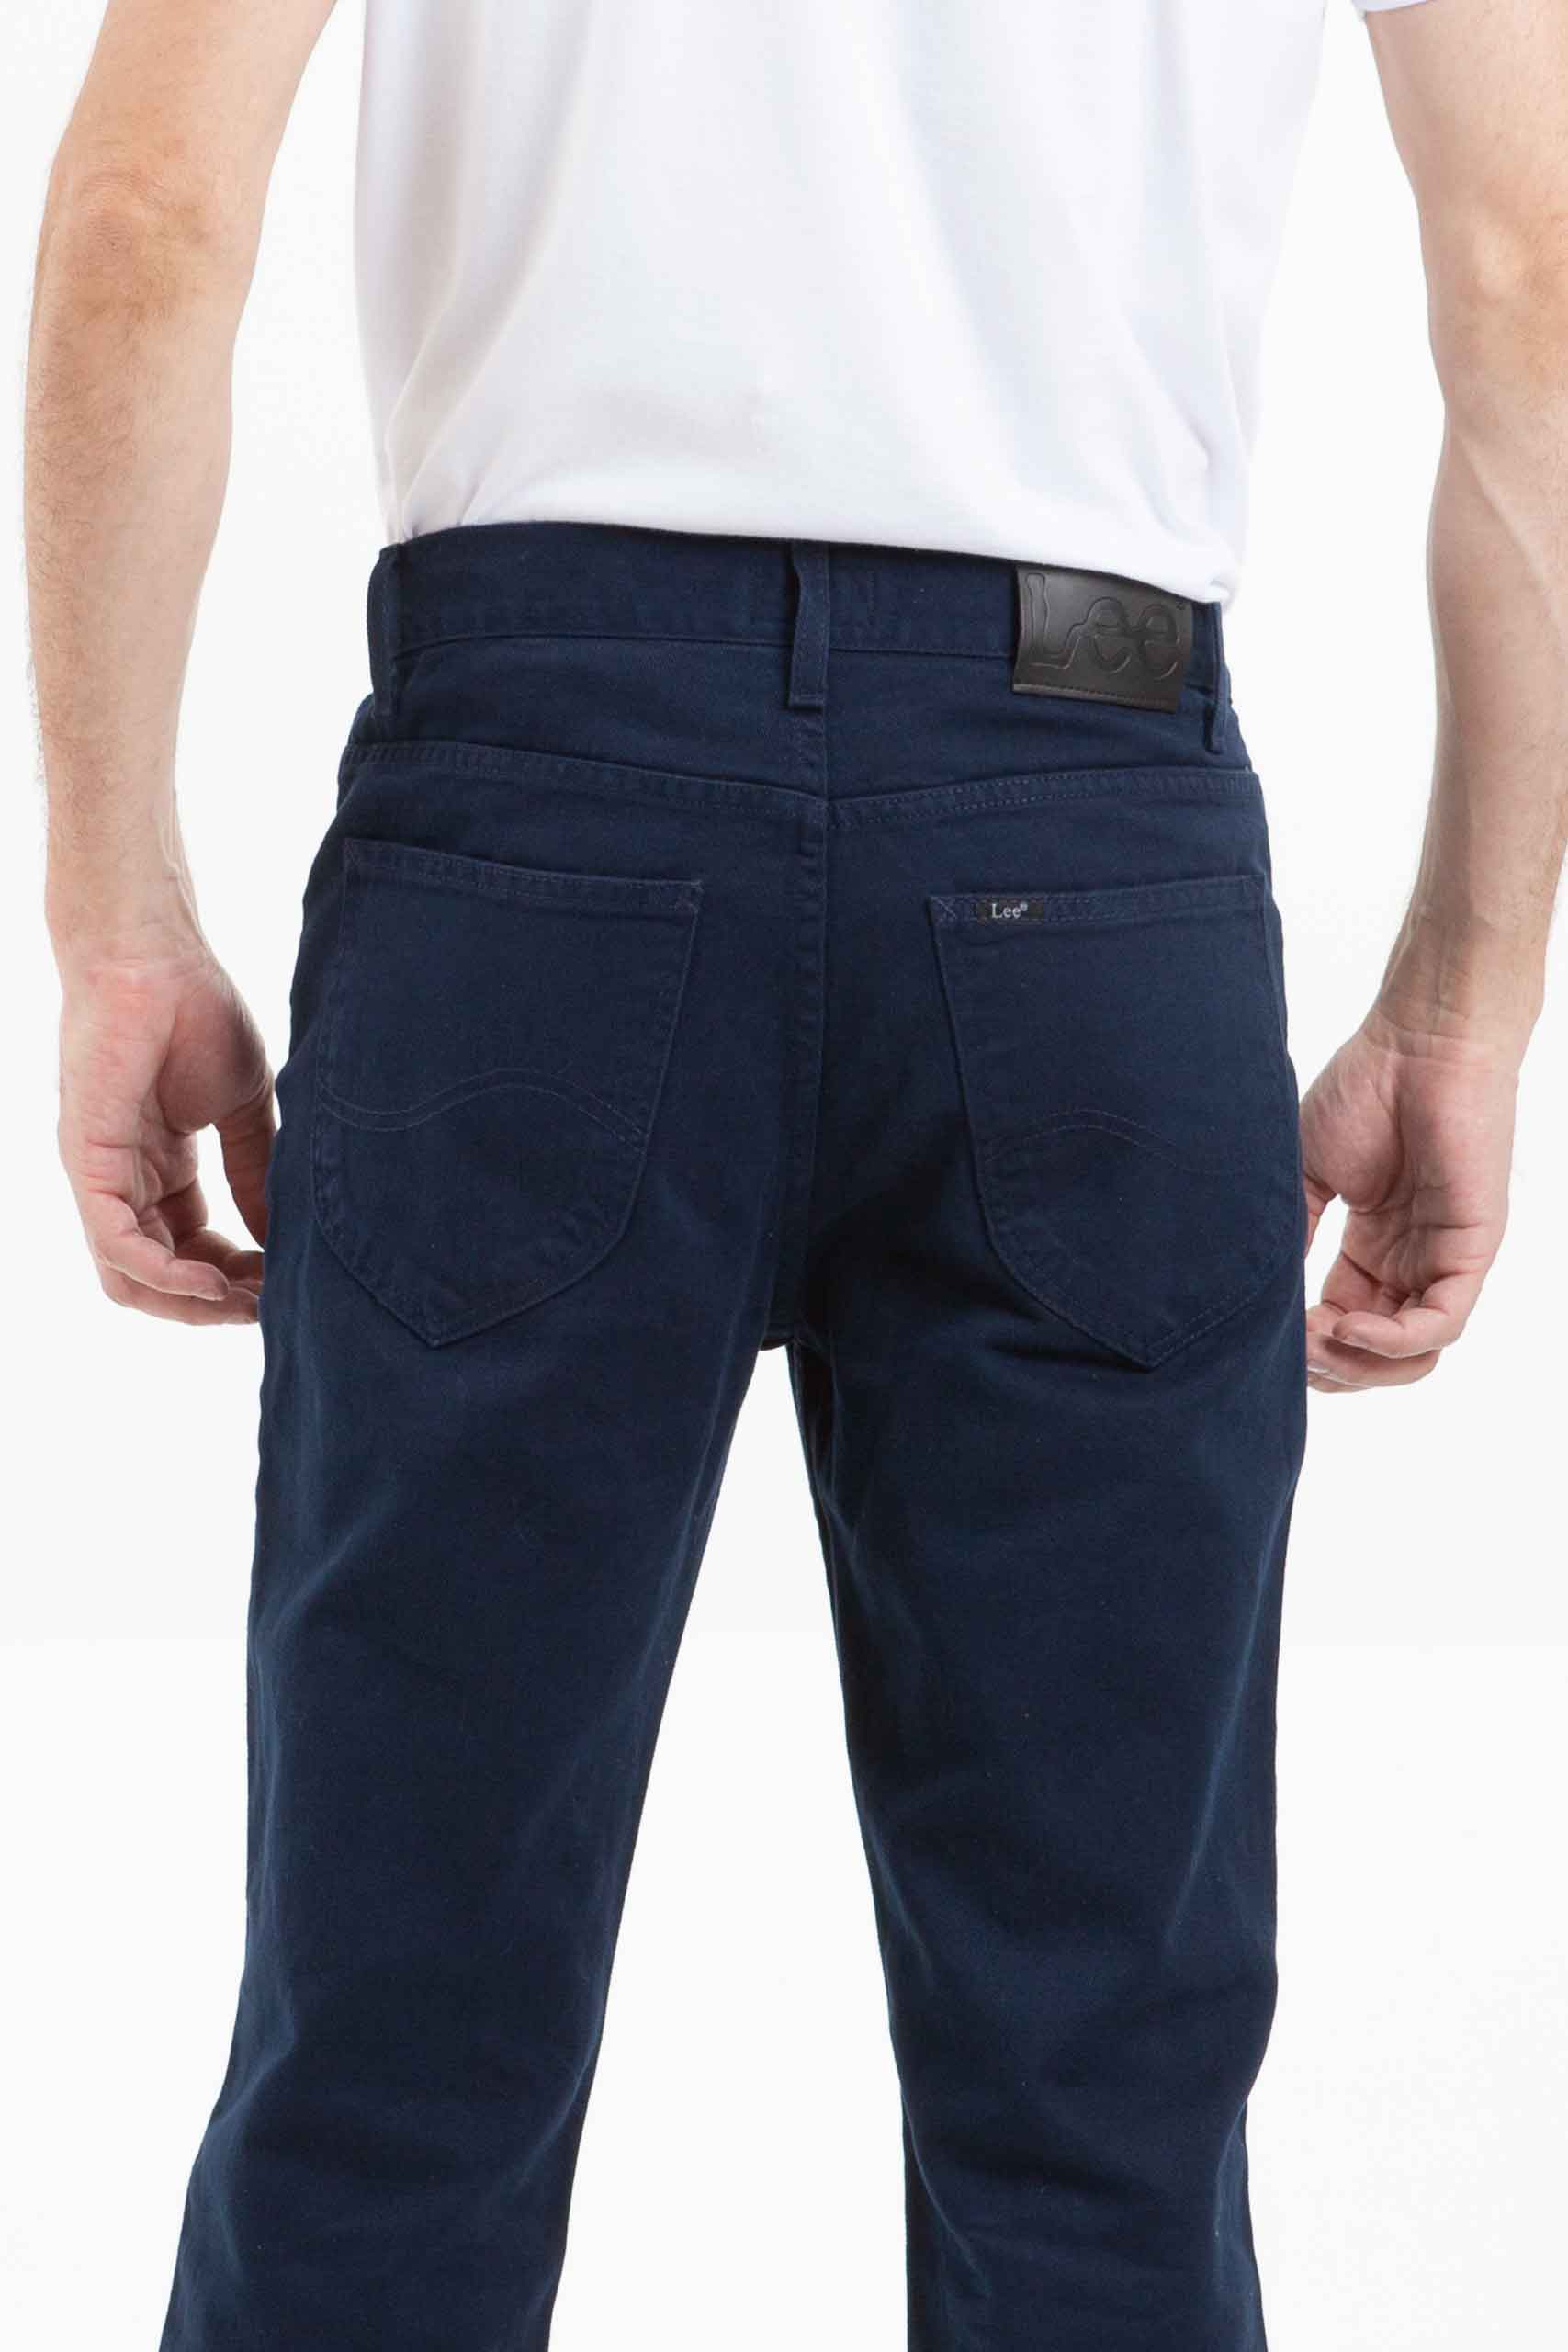 Vista posterior de jean de color azul de marca lee